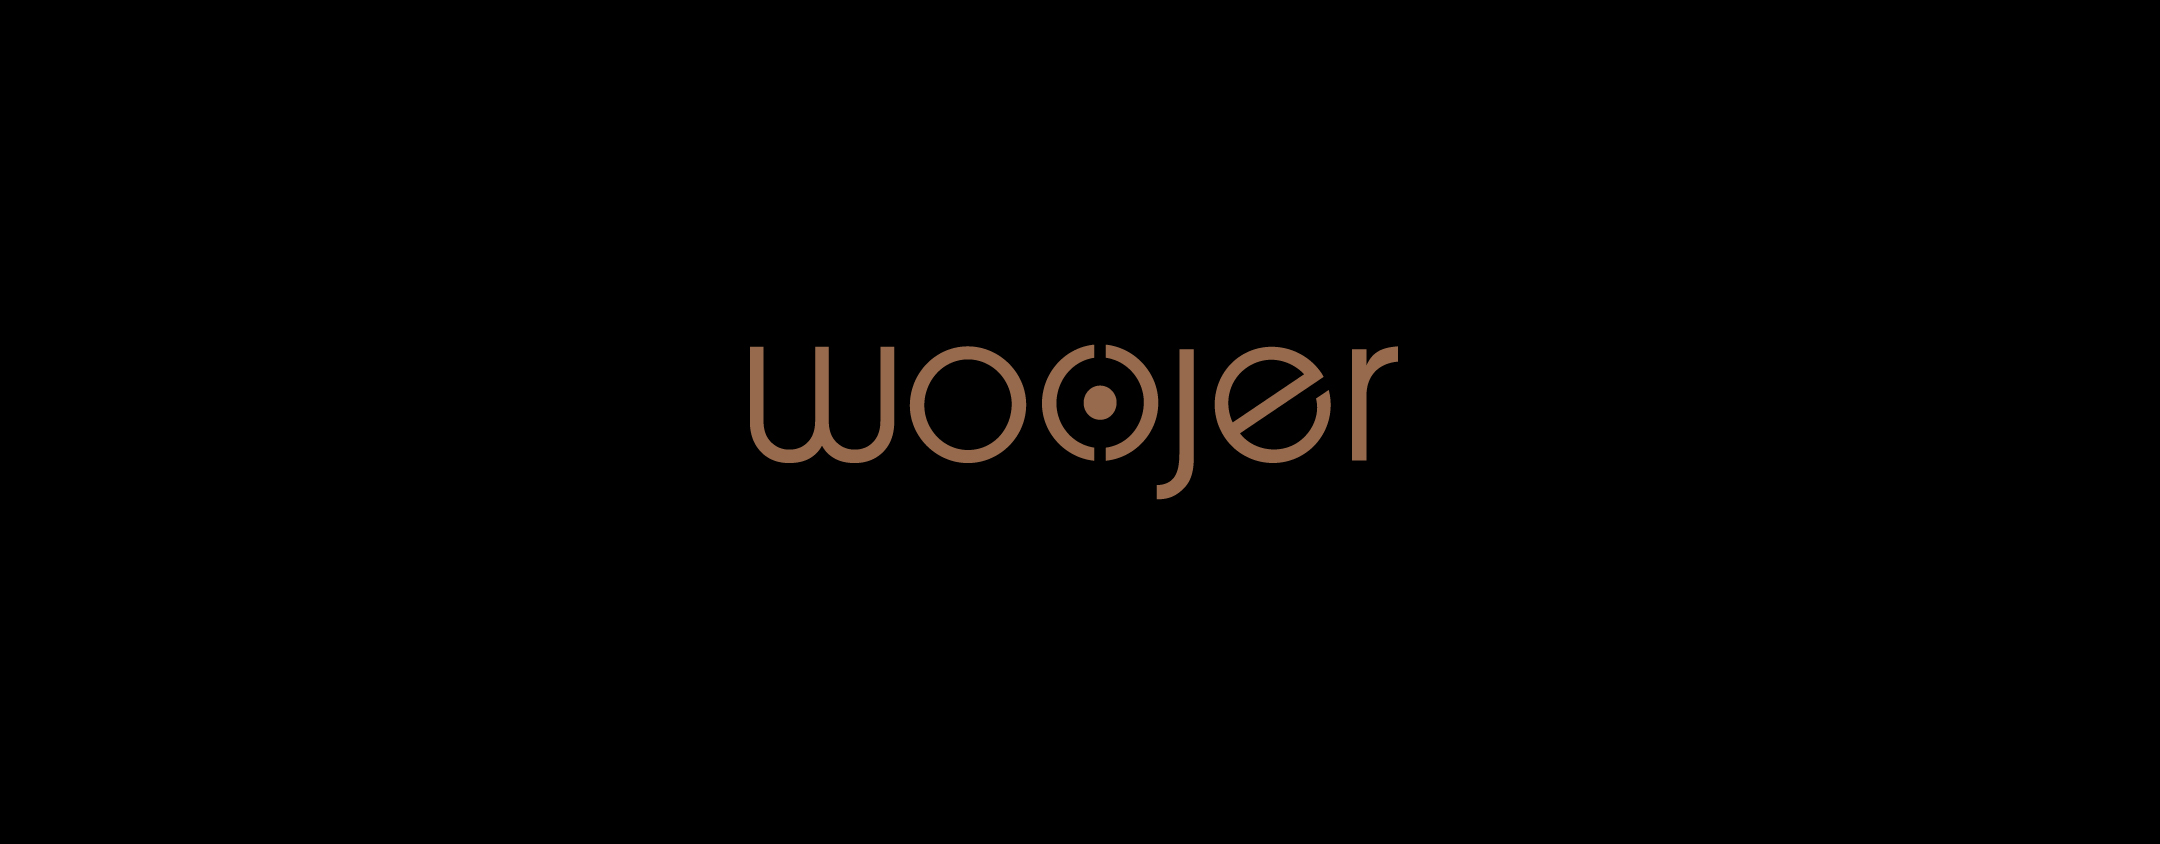 woojer|עיצוב אריזות|עיצוב פריסה|אביזרים לגיימרים|קריאטיב